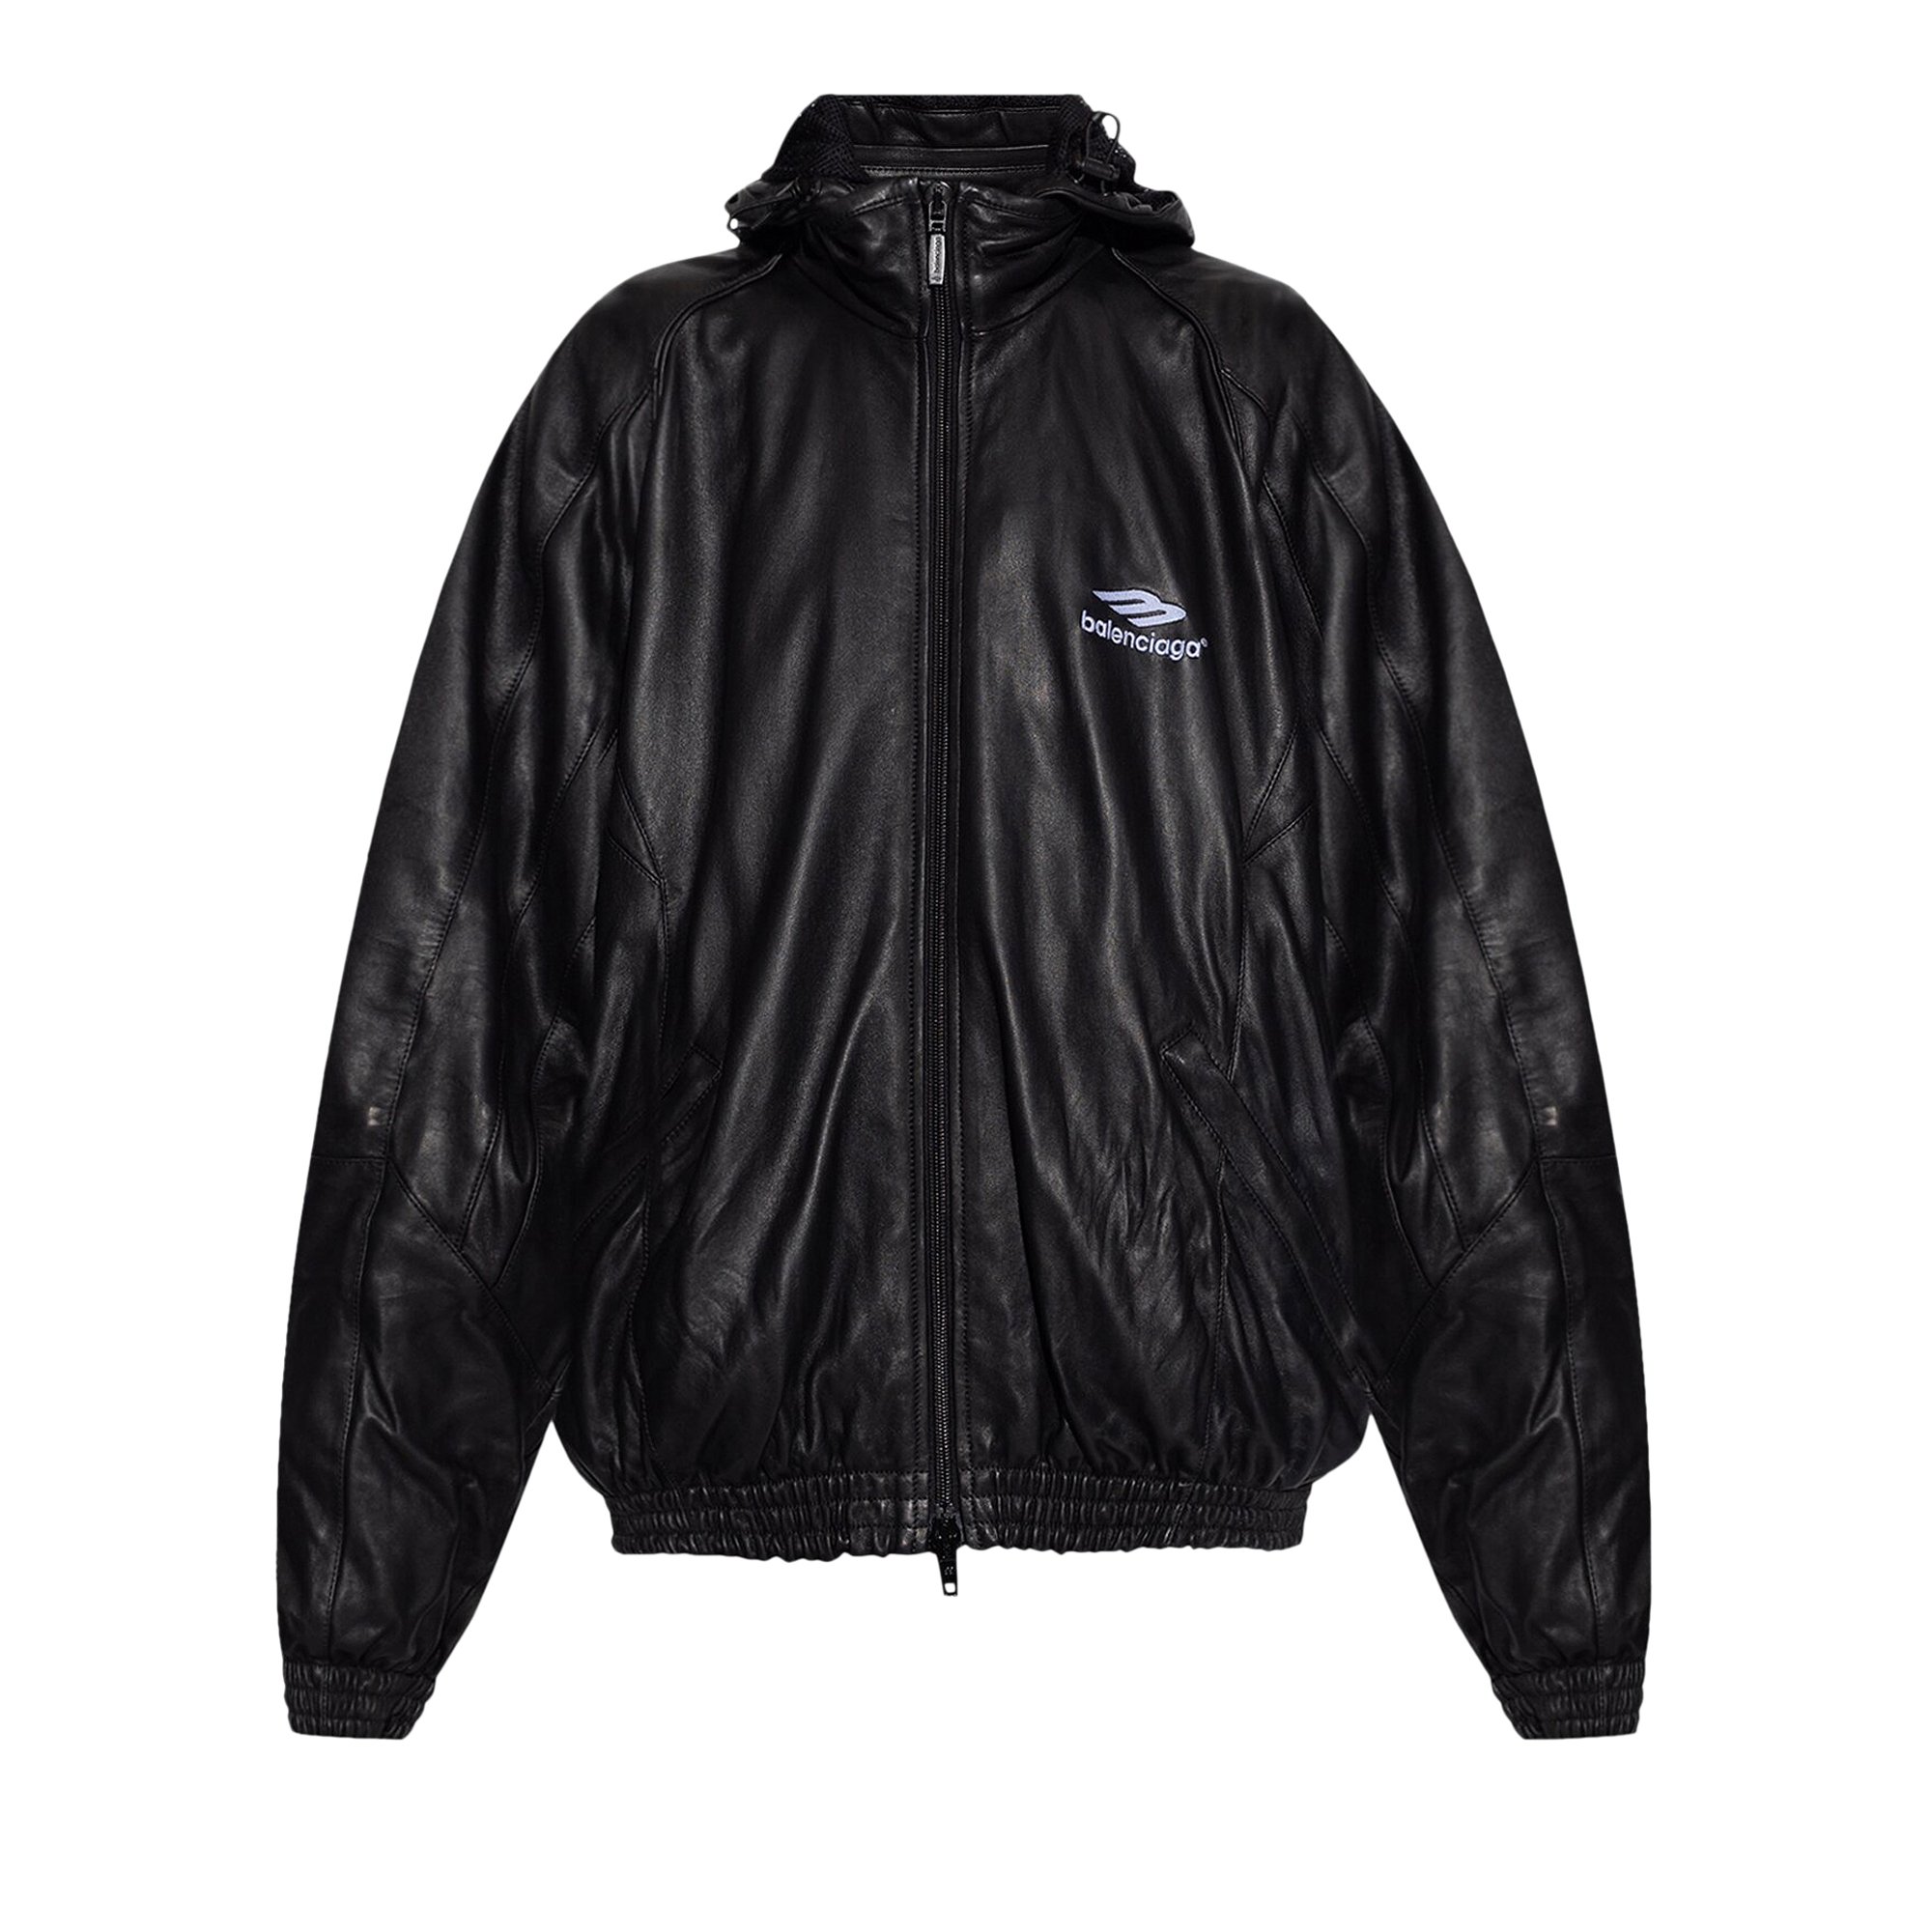 Buy Balenciaga Leather Jacket 'Black' - 750973 TMS02 1000 | GOAT